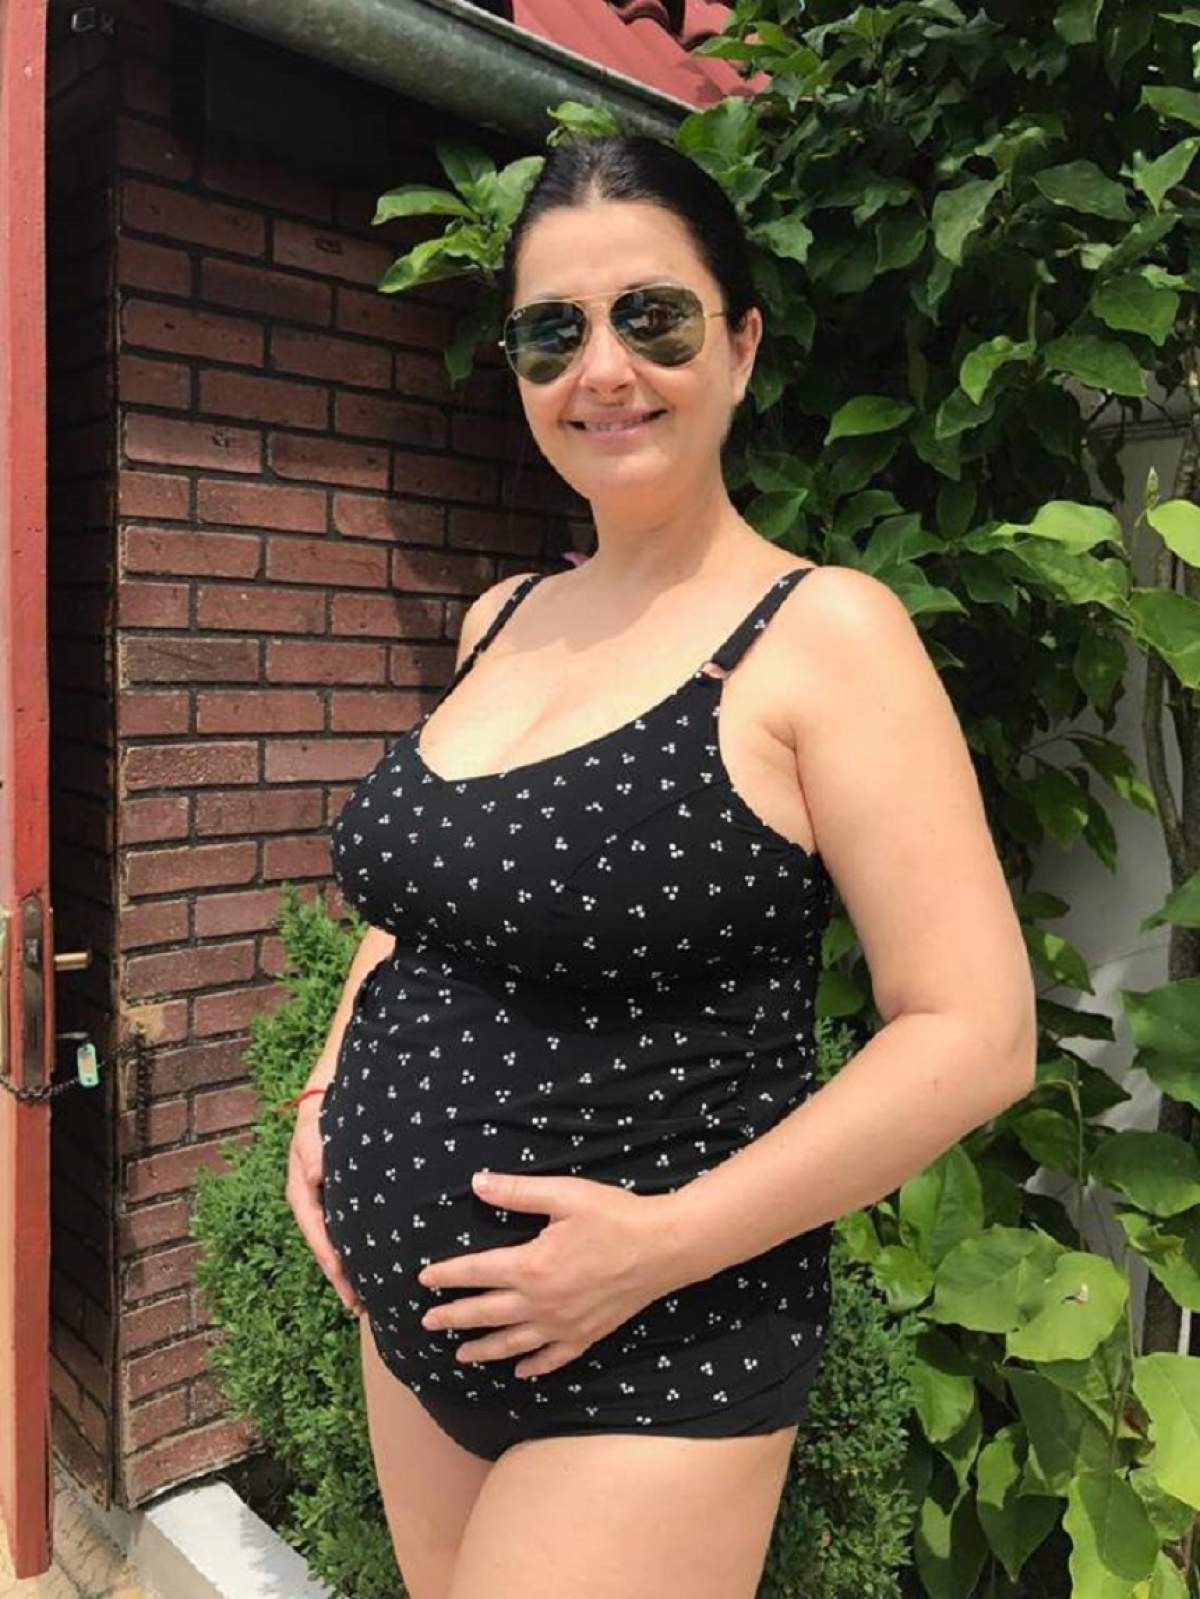 Imaginea cu Gabriela Cristea însărcinată, în costum de baie, a stârnit sute de reacţii! Ce a apărut pe contul ei de socializare